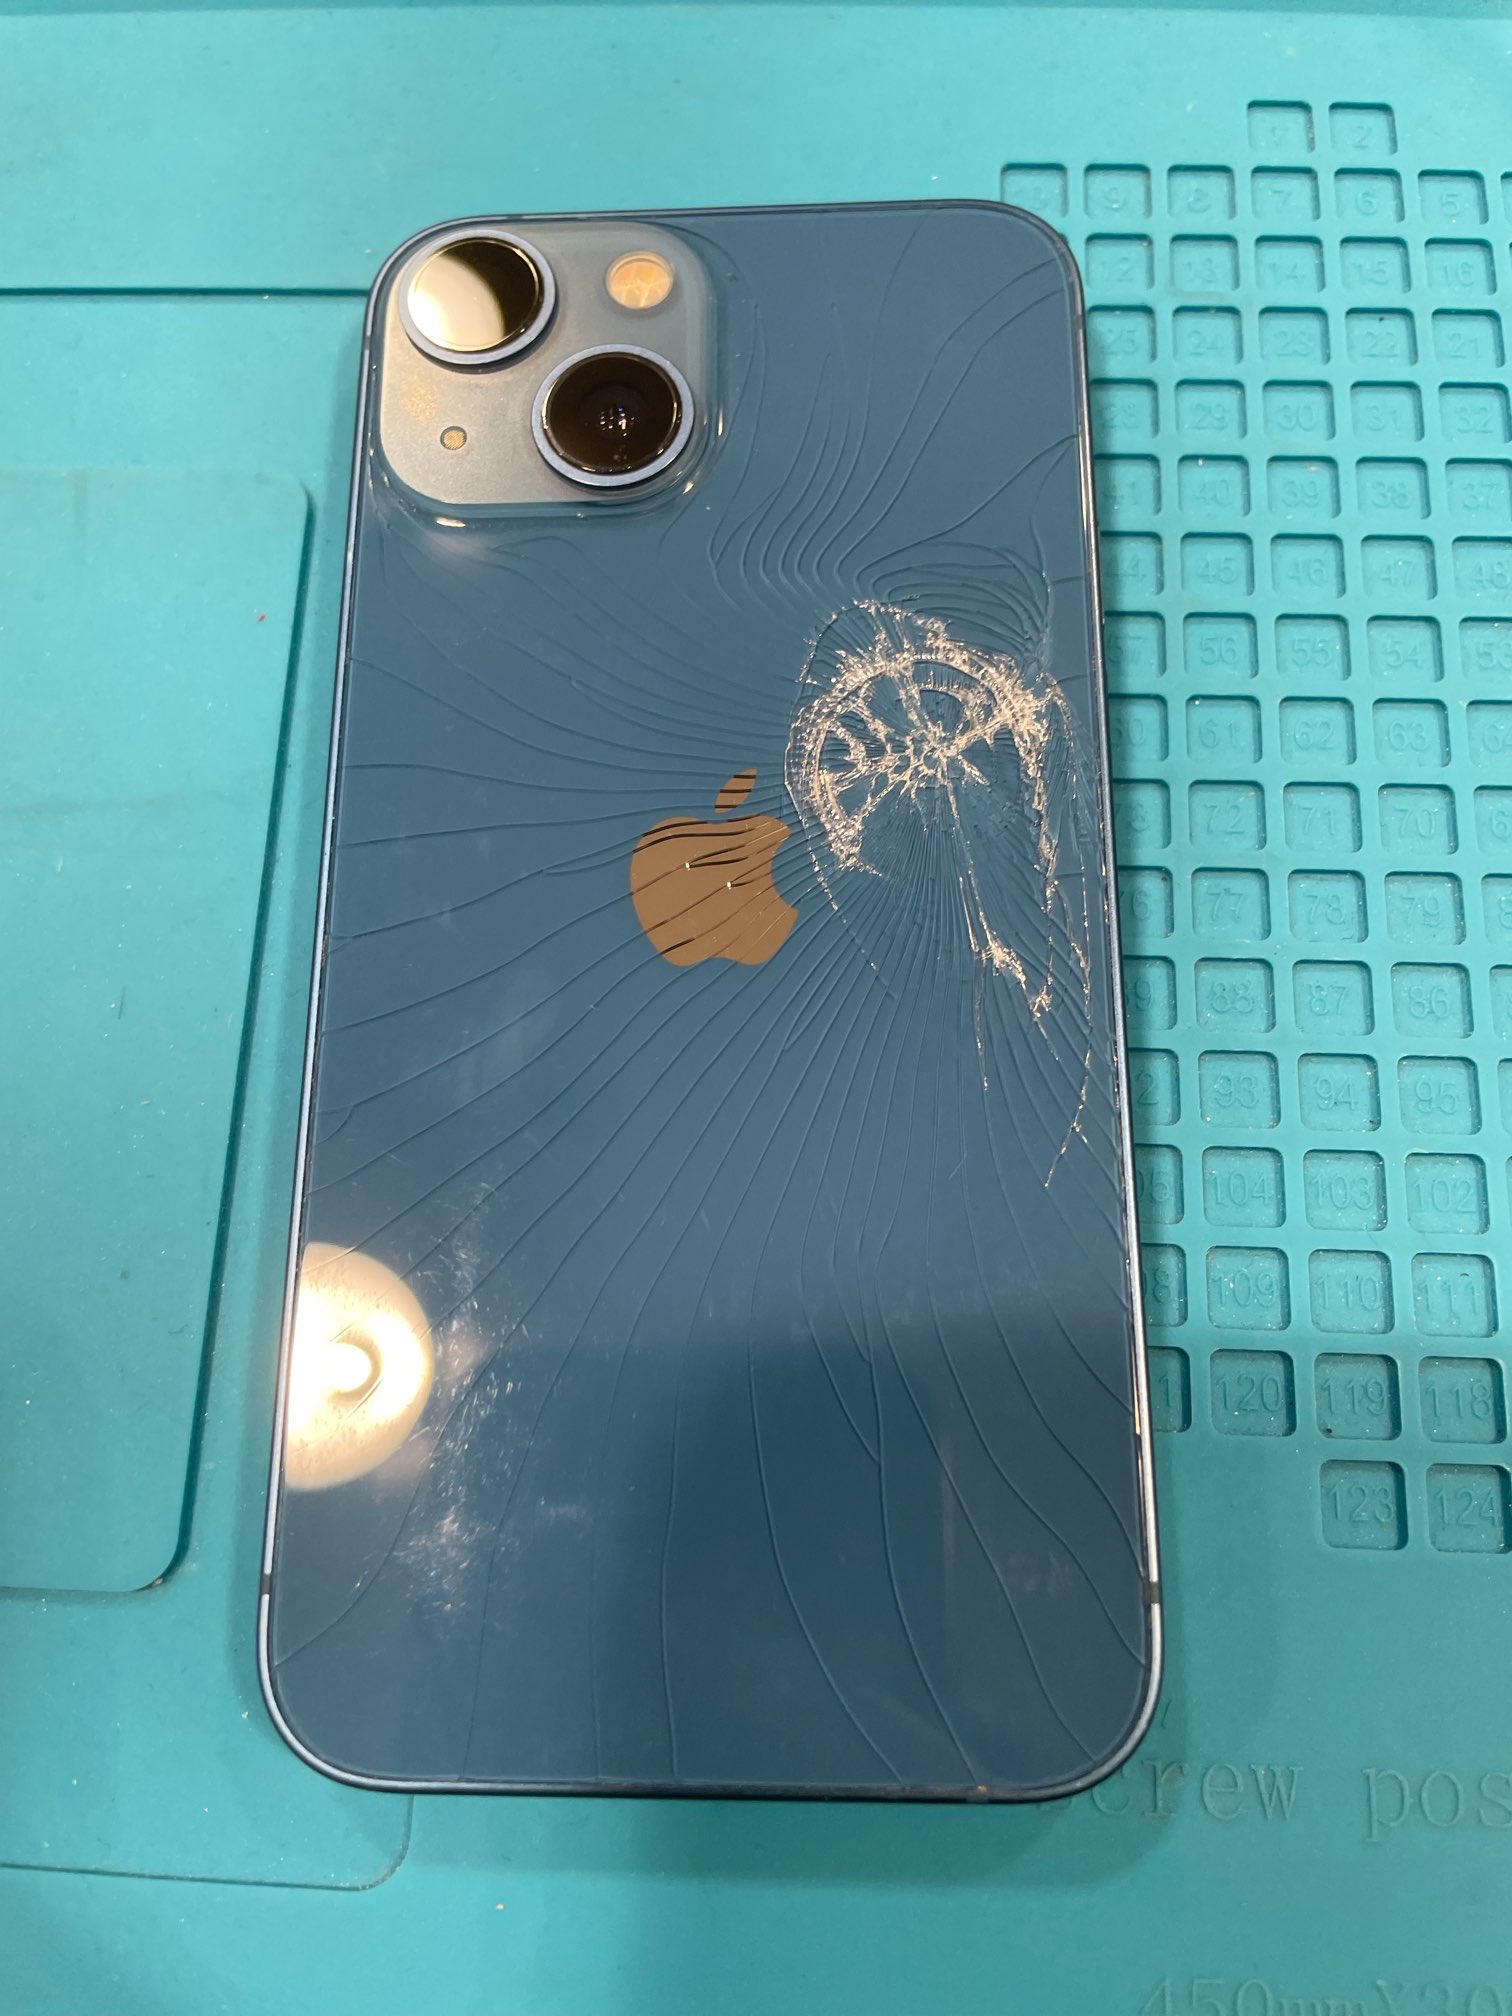 iPhone 13 mini 背面ガラス割れ修理 伊丹市でデータそのまま修理! 【イオンモール伊丹店】